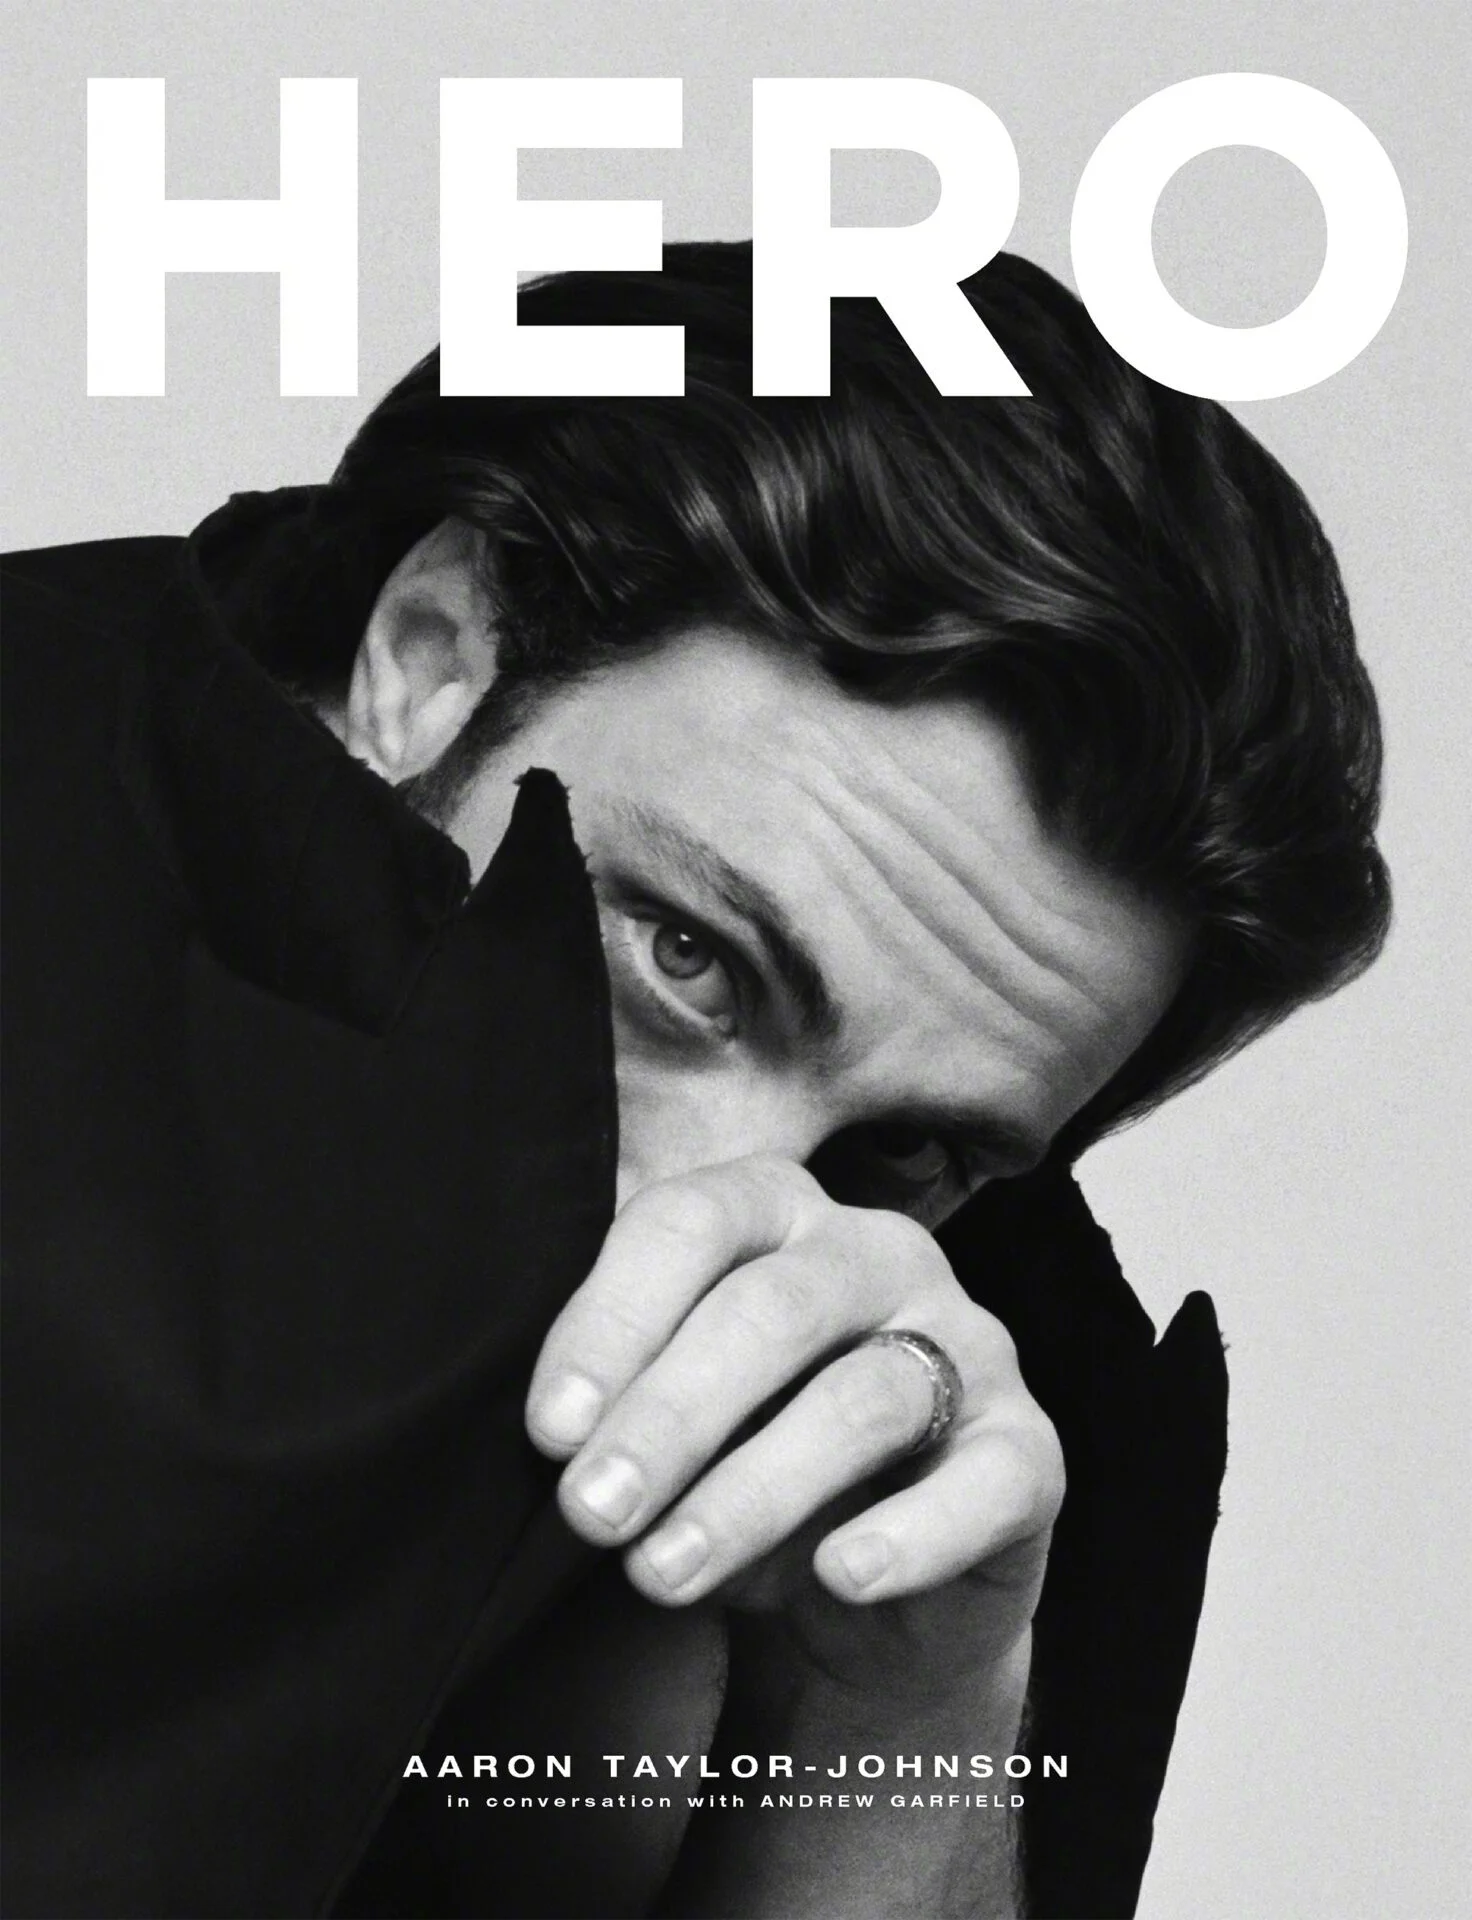 Aaron Taylor-Johnson, "Hero" new issue photo ​​​